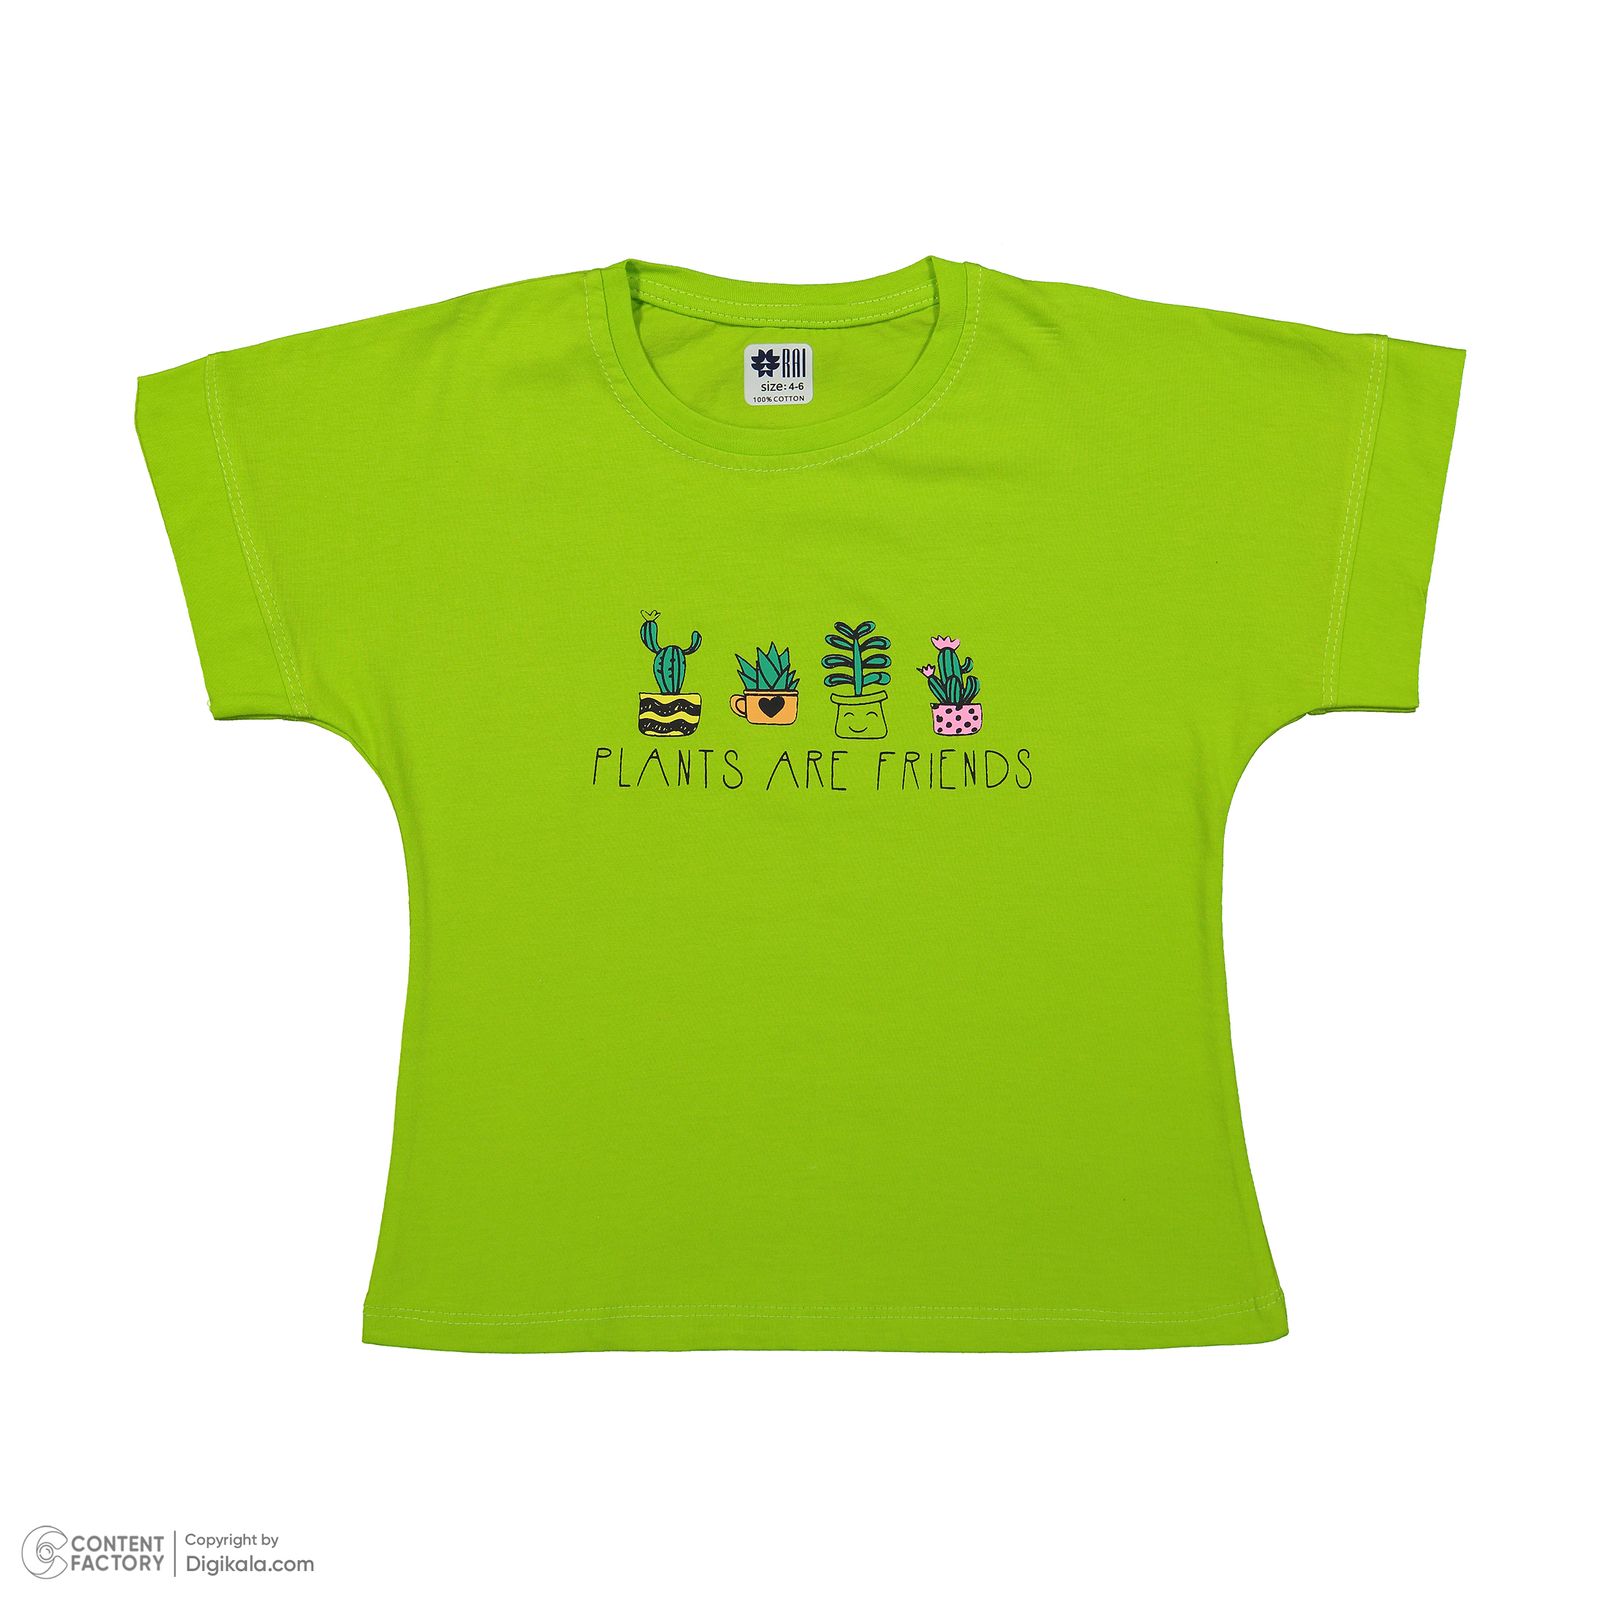 ست تی شرت آستین کوتاه و شلوارک دخترانه مادر مدل گاردن کد 92-43 رنگ سبز -  - 4